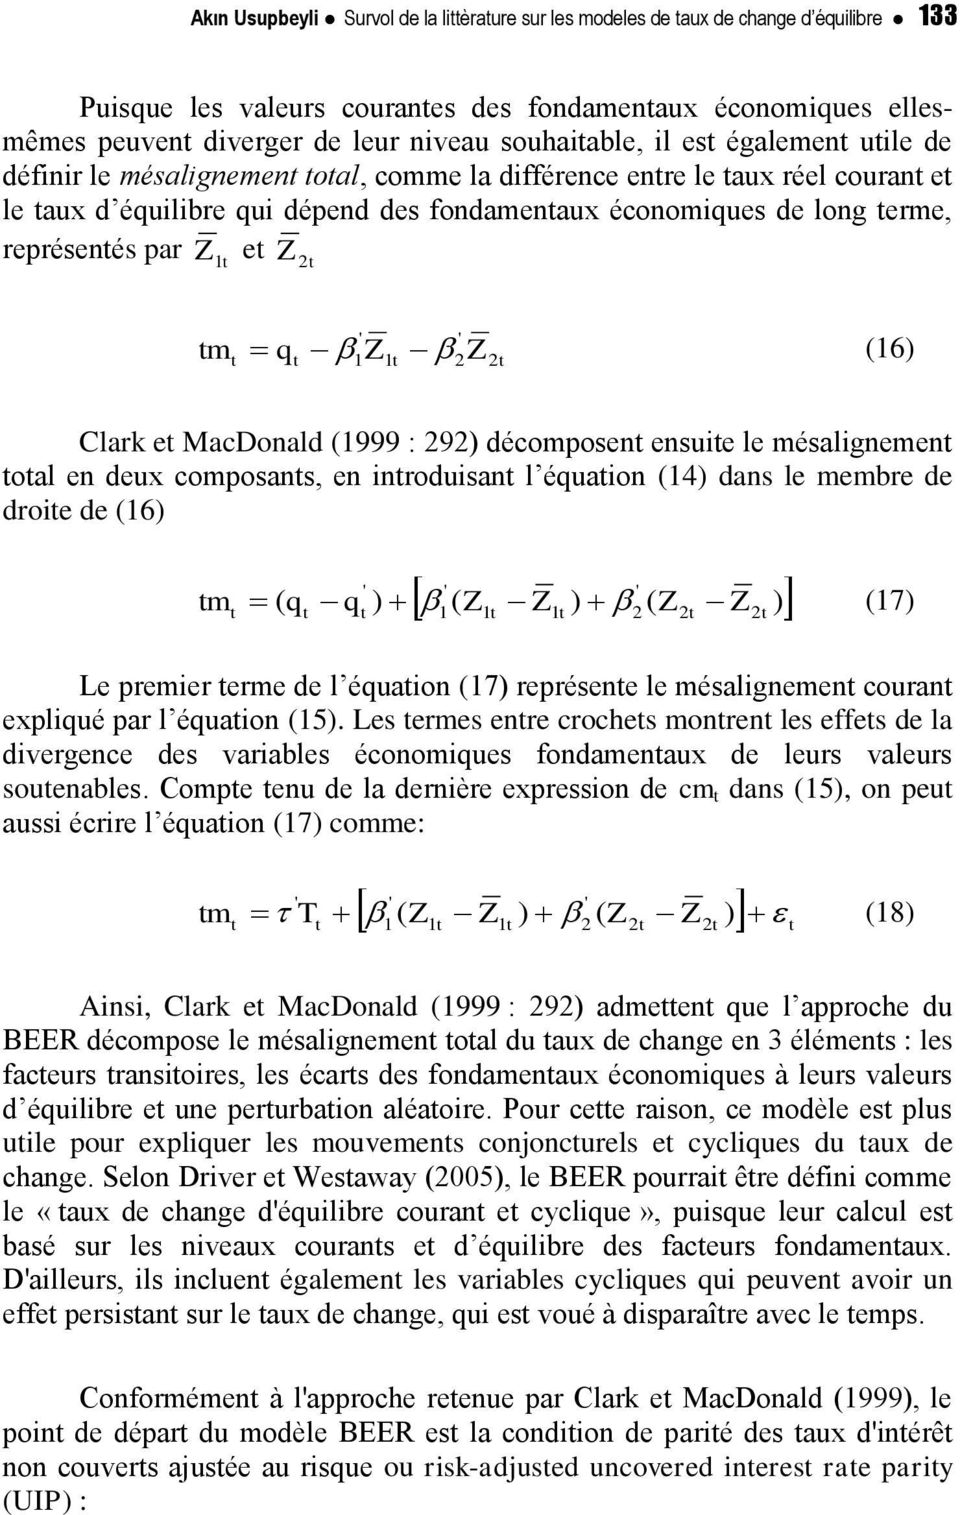 1Z1 2Z2 (16) Clark e MacDonald (1999 : 292) décomposen ensuie le mésalignemen oal en deux composans, en inroduisan l équaion (14) dans le membre de droie de (16) m ( q 1 1 1 2 2 2 ' ' ' q ) ( Z Z ) (